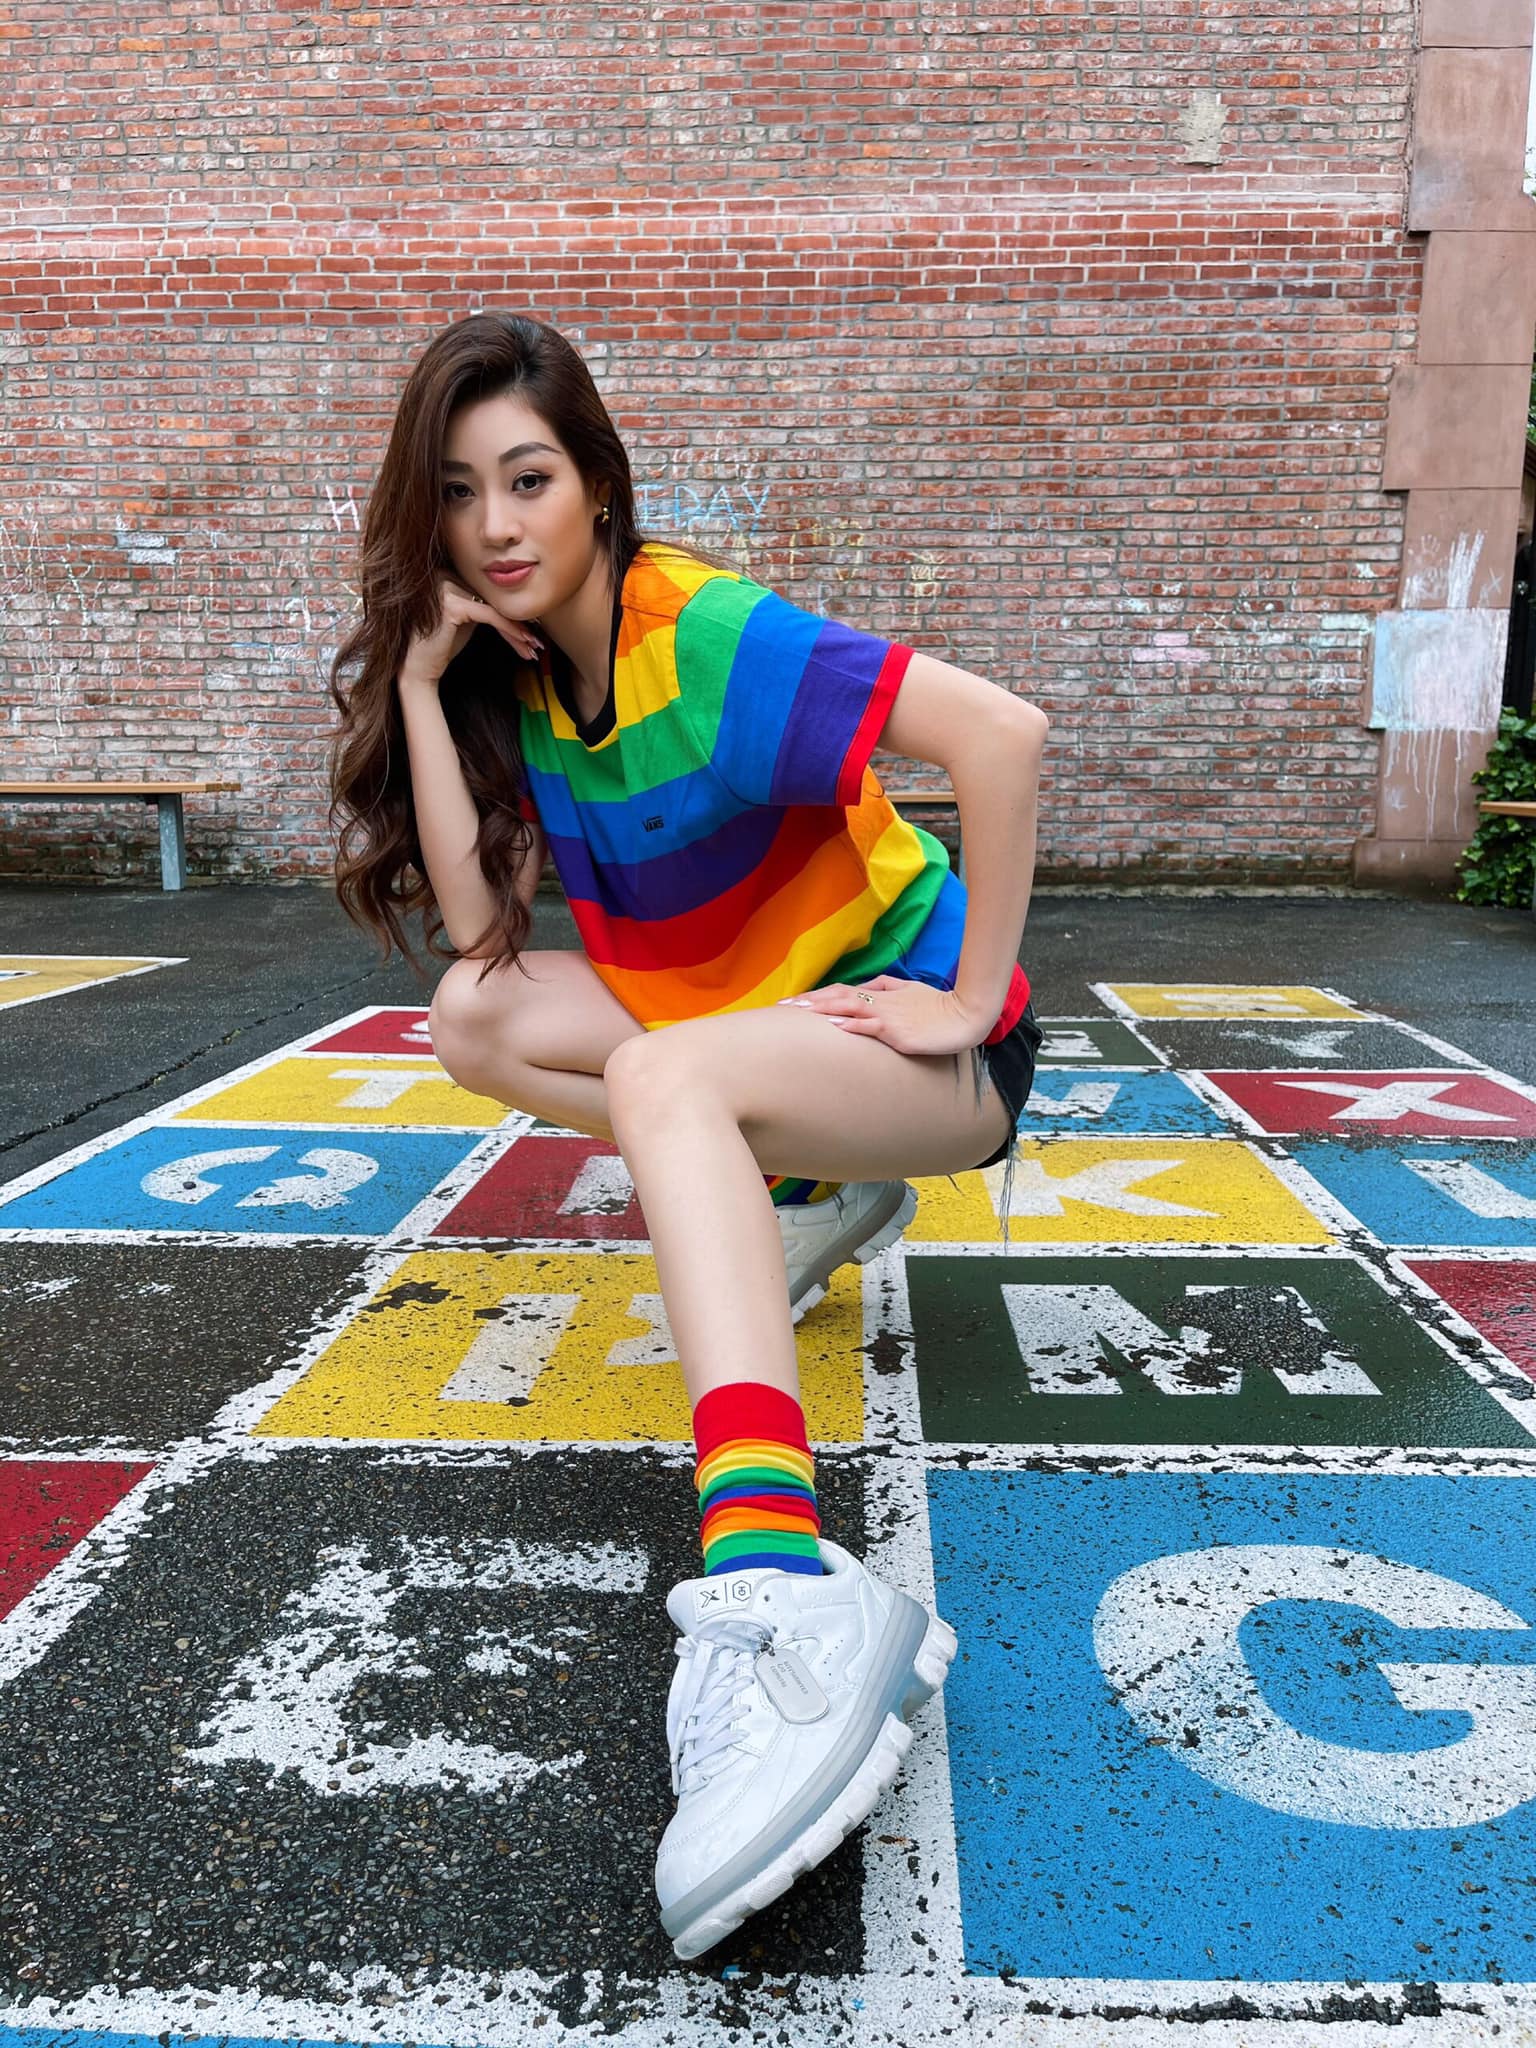 Hoa hậu Khánh Vân diện trang phục lục sắc, thể hiện sự ủng hộ cộng đồng LGBTIQ+. Nàng hậu hiện vẫn bận rộn tham gia các hoạt động tại New York trong thời gian chờ chuyến bay về Việt Nam.